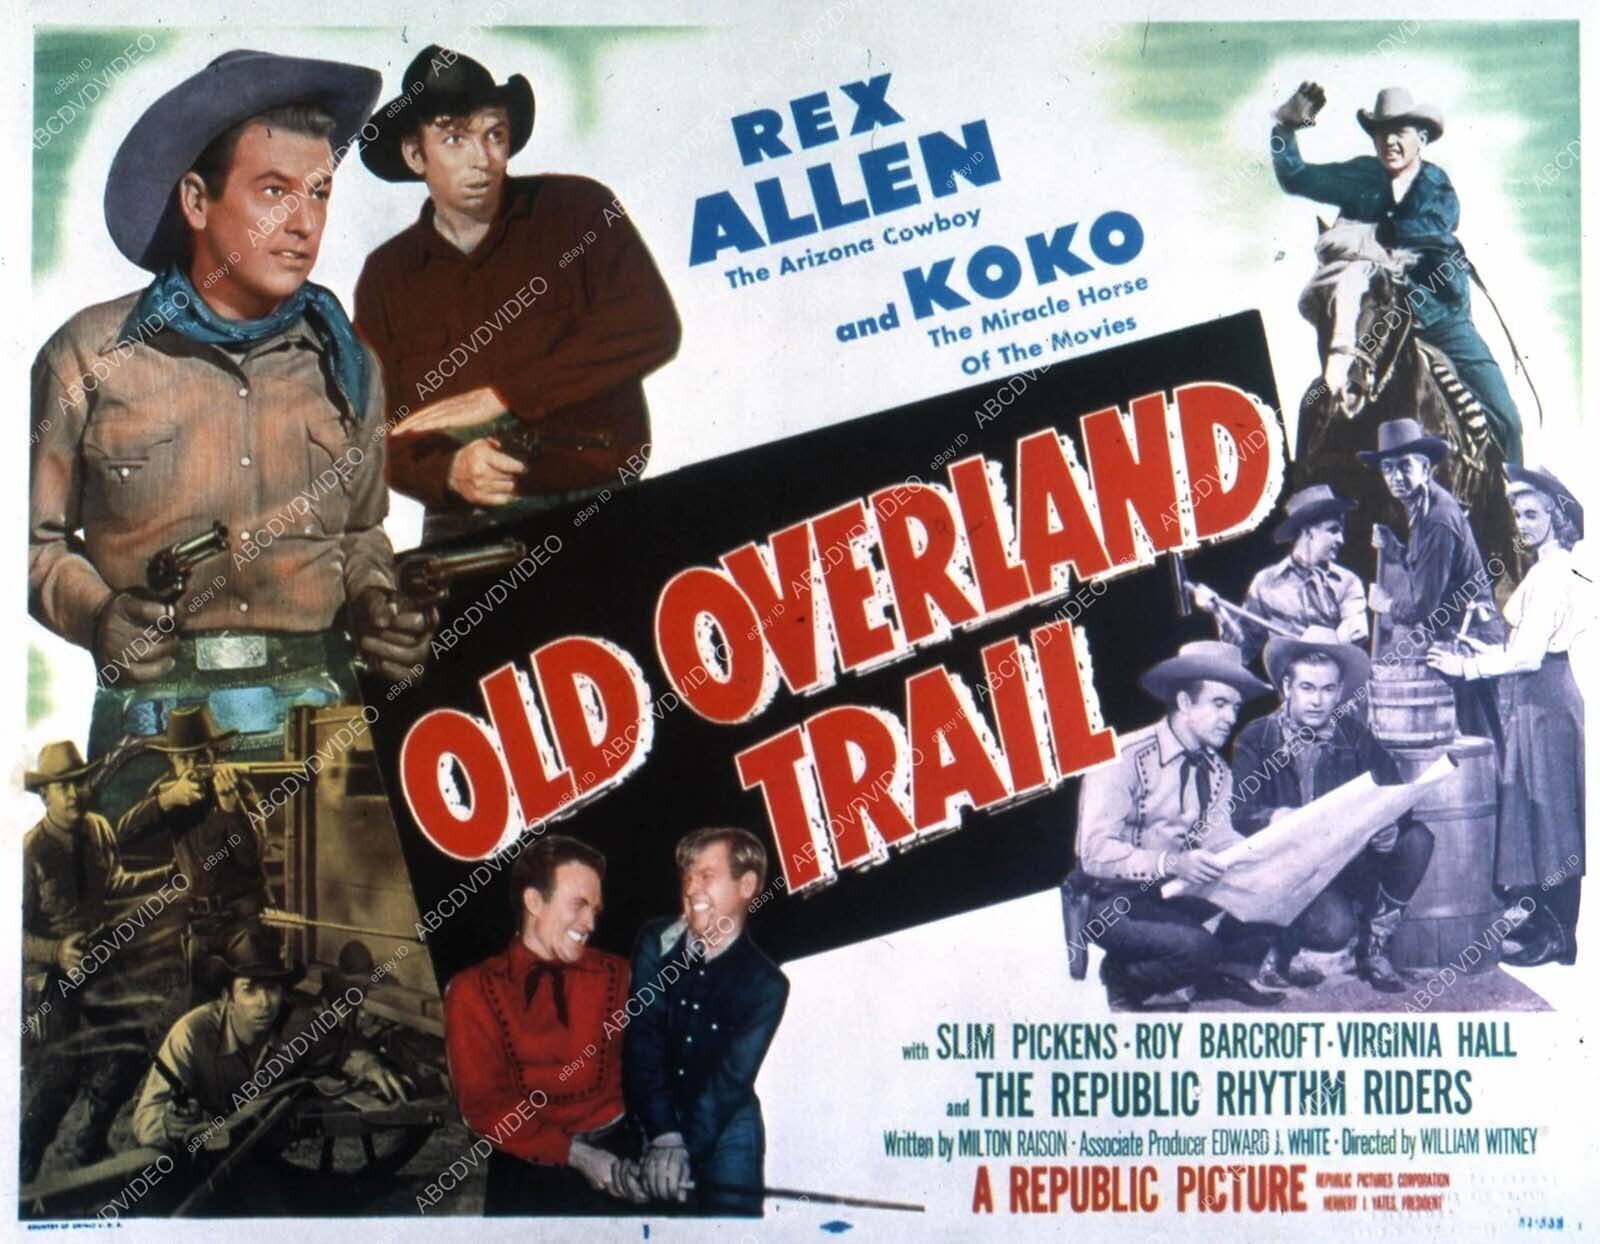 35m-4600 Rex Allen Slim Pickens western film Old Overland Trail 35m-4600 35m-460